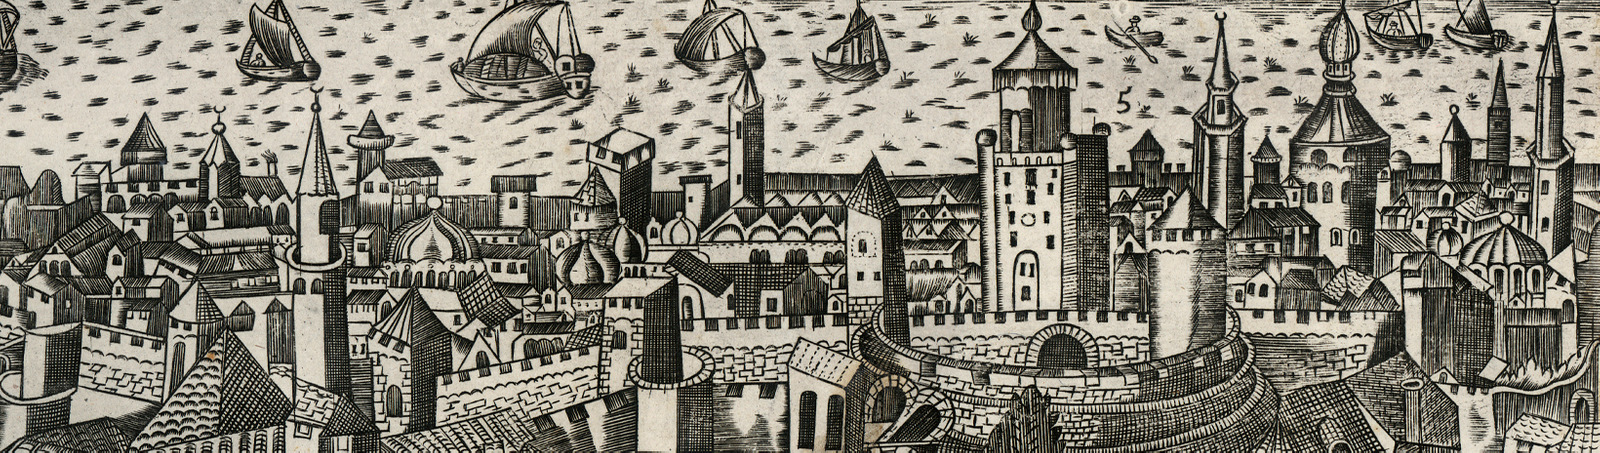 Фоновое изображение Изображение Константинополя, или Царяграда